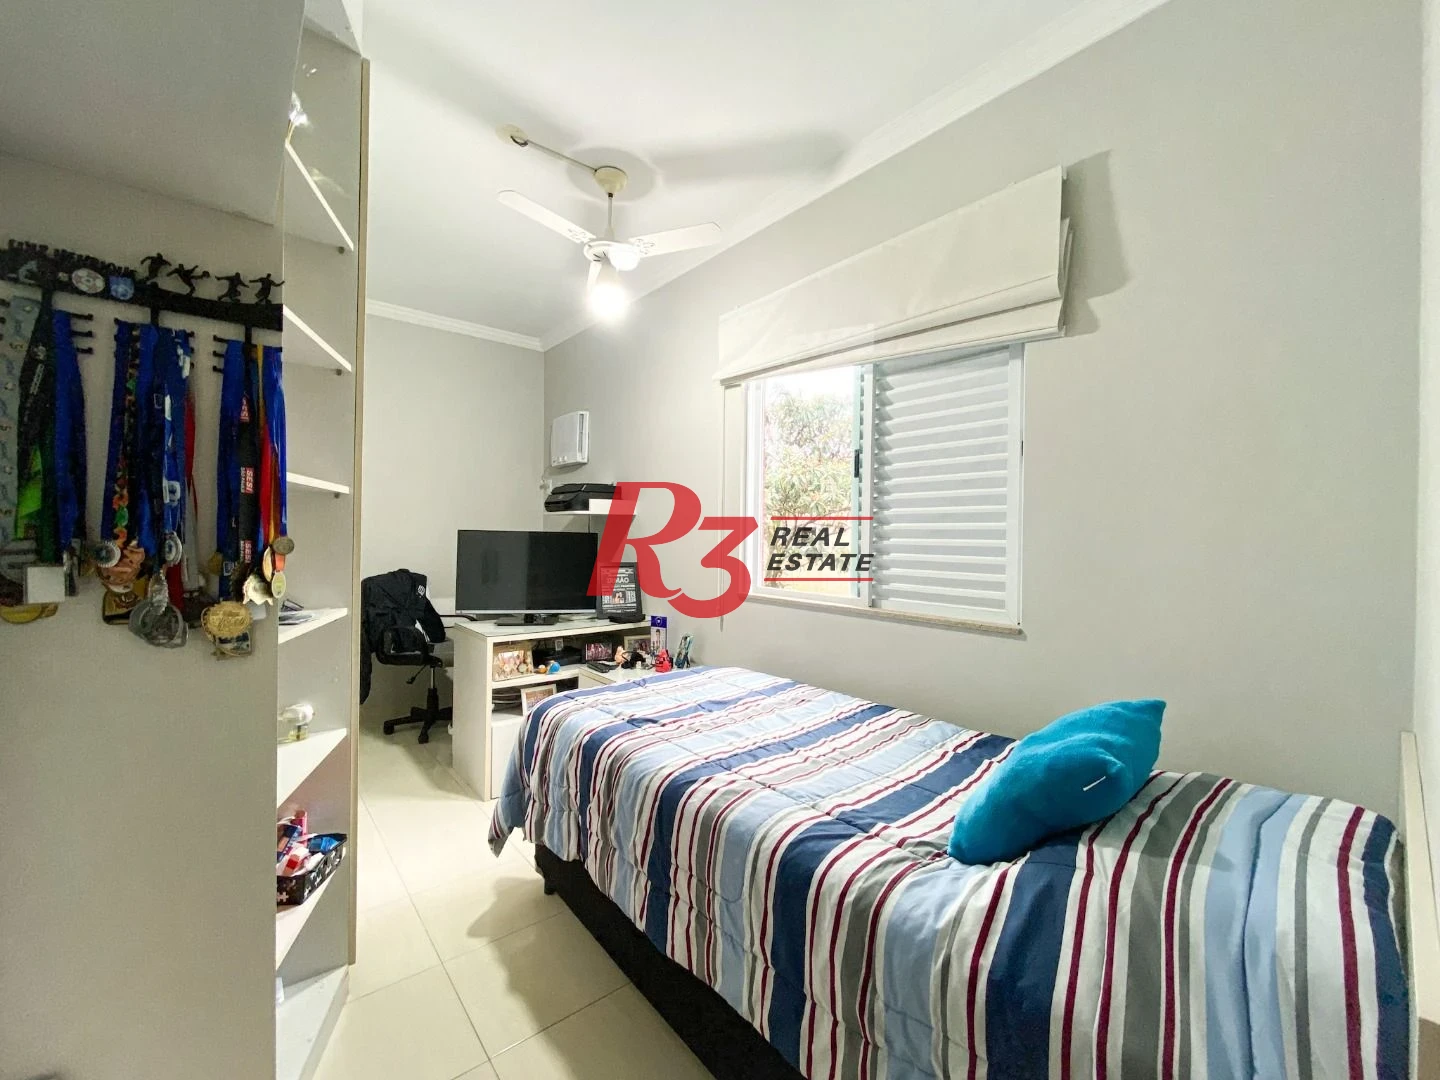 Sobrado com 3 dormitórios à venda, 130 m² por R$ 980.000 no José Menino - Santos/SP